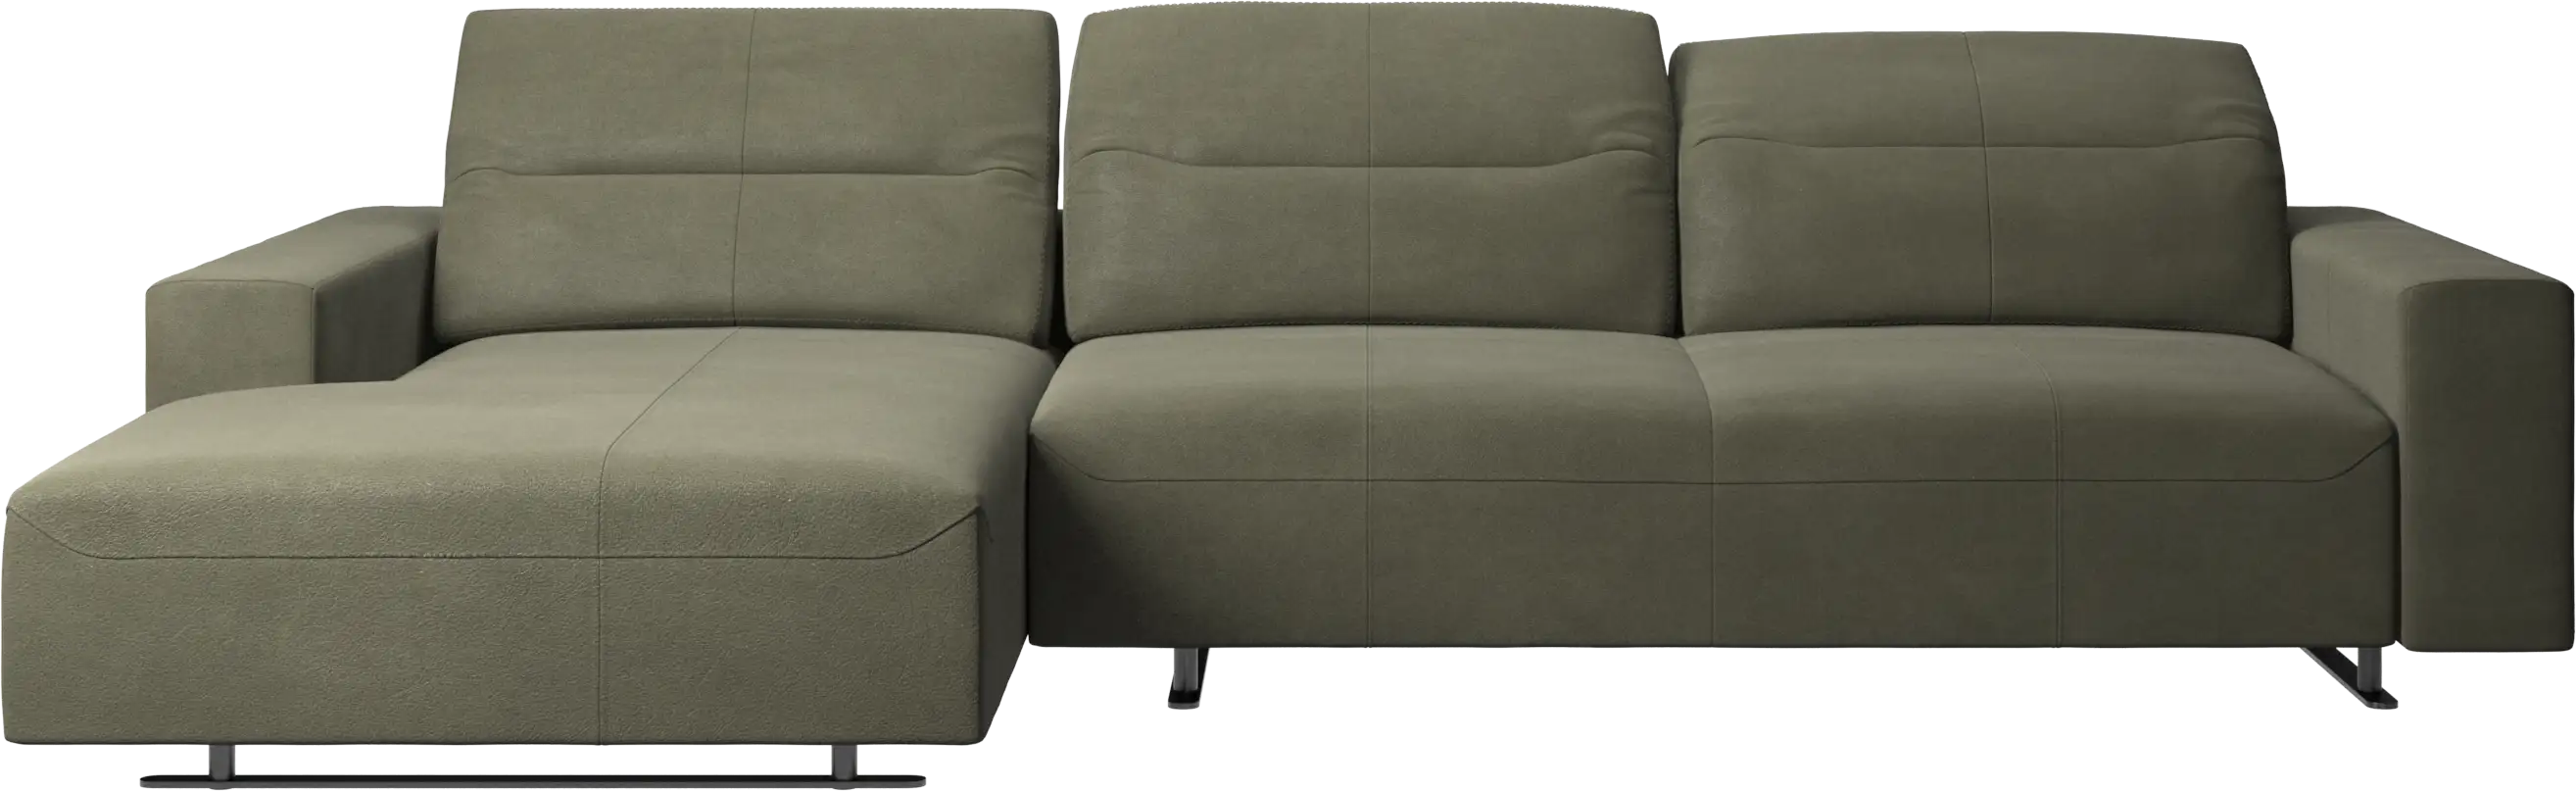 Canapé Hampton avec dossier ajustable, méridienne et espace de rangement côté gauche